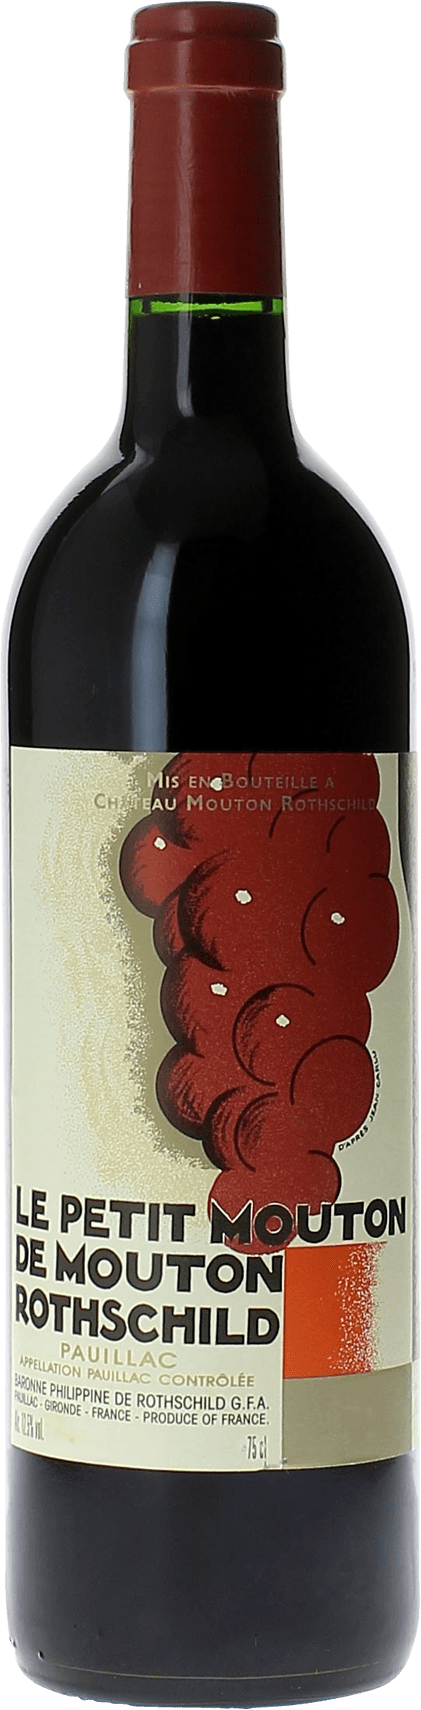 Petit mouton 2016 2nd vin de Mouton Rothschild Pauillac, Bordeaux rouge